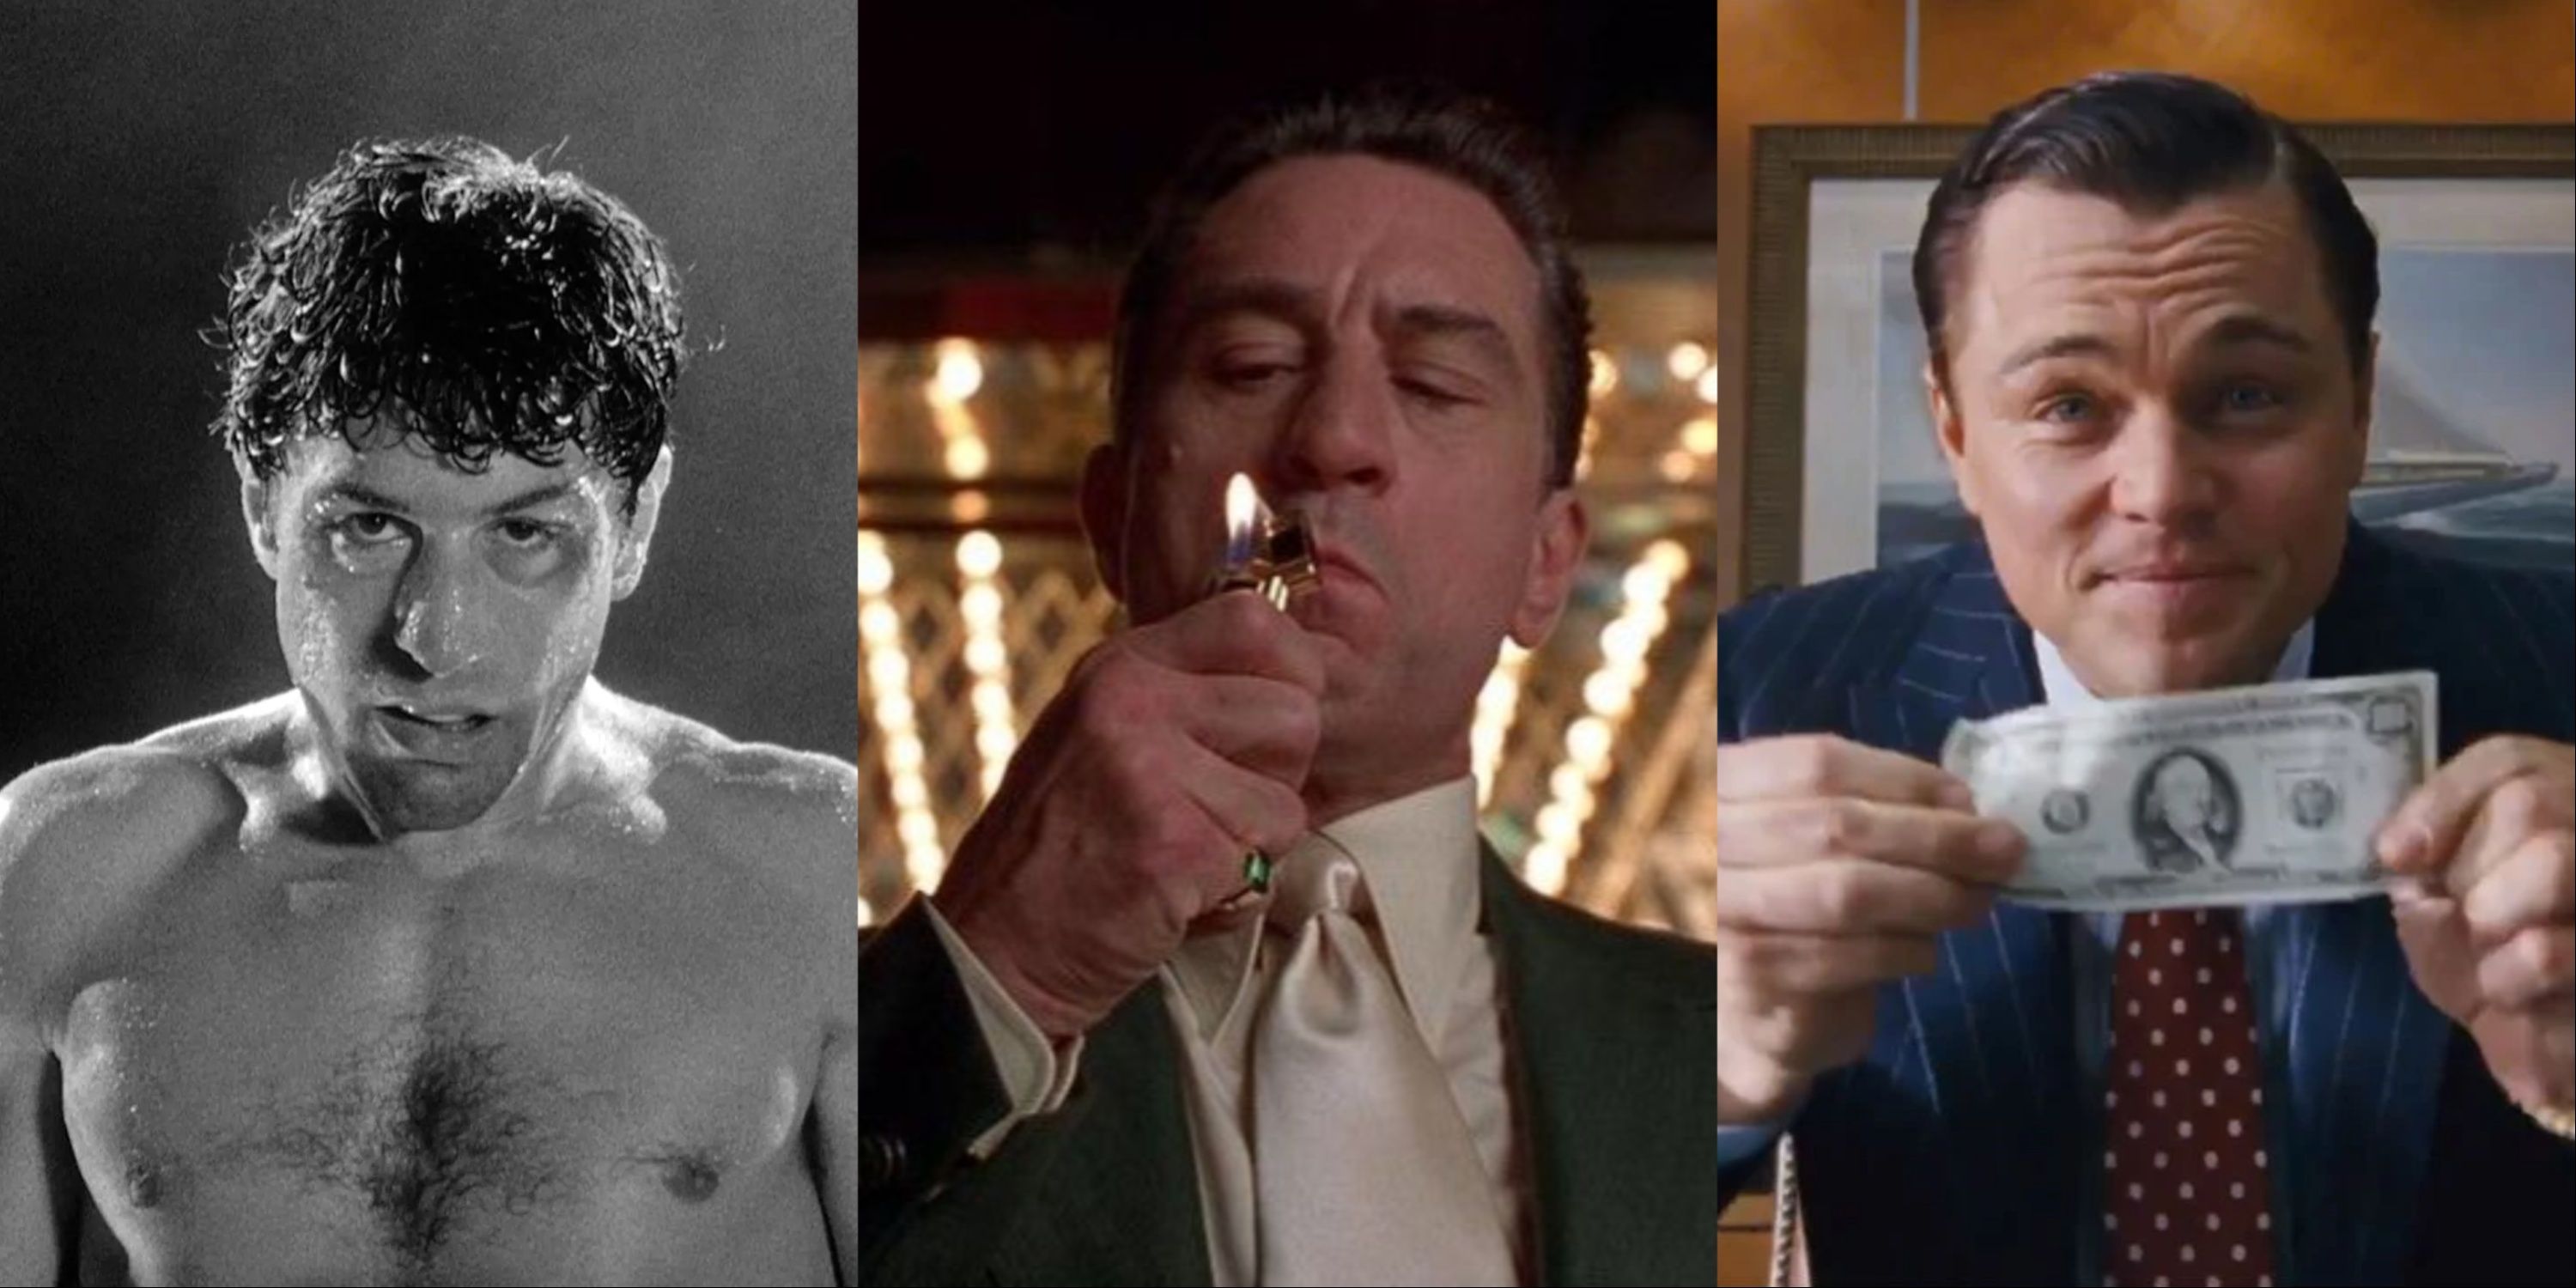 A split image of Robert De Niro in Raging Bull, Robert De Niro in Casino, and Leonardo DiCaprio in The Wolf of Wall Street